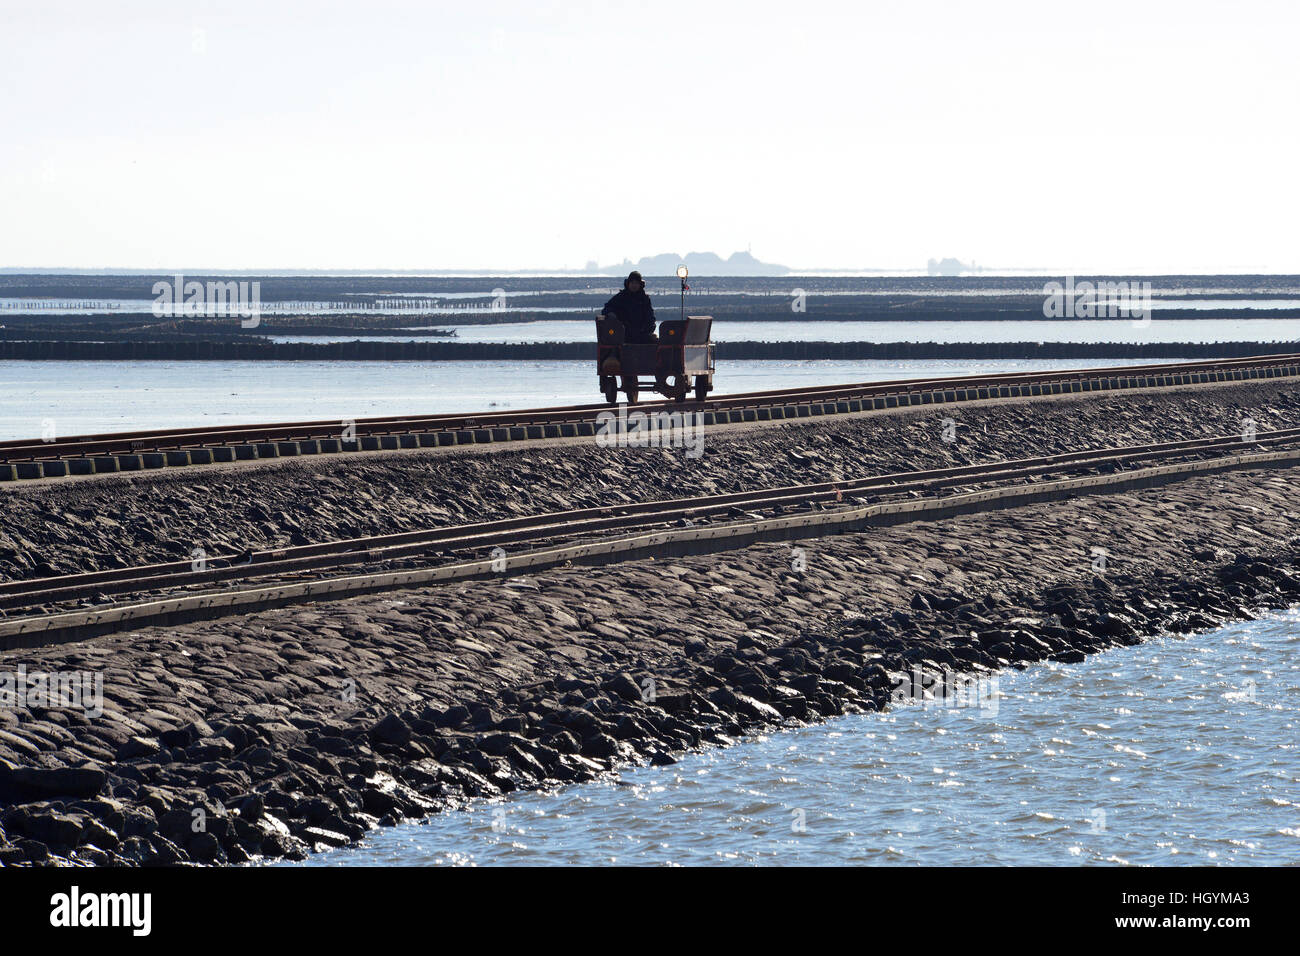 Barrage roulant sur chariot en mer des Wadden, hallig oland, île, Schleswig-Holstein, Allemagne Banque D'Images